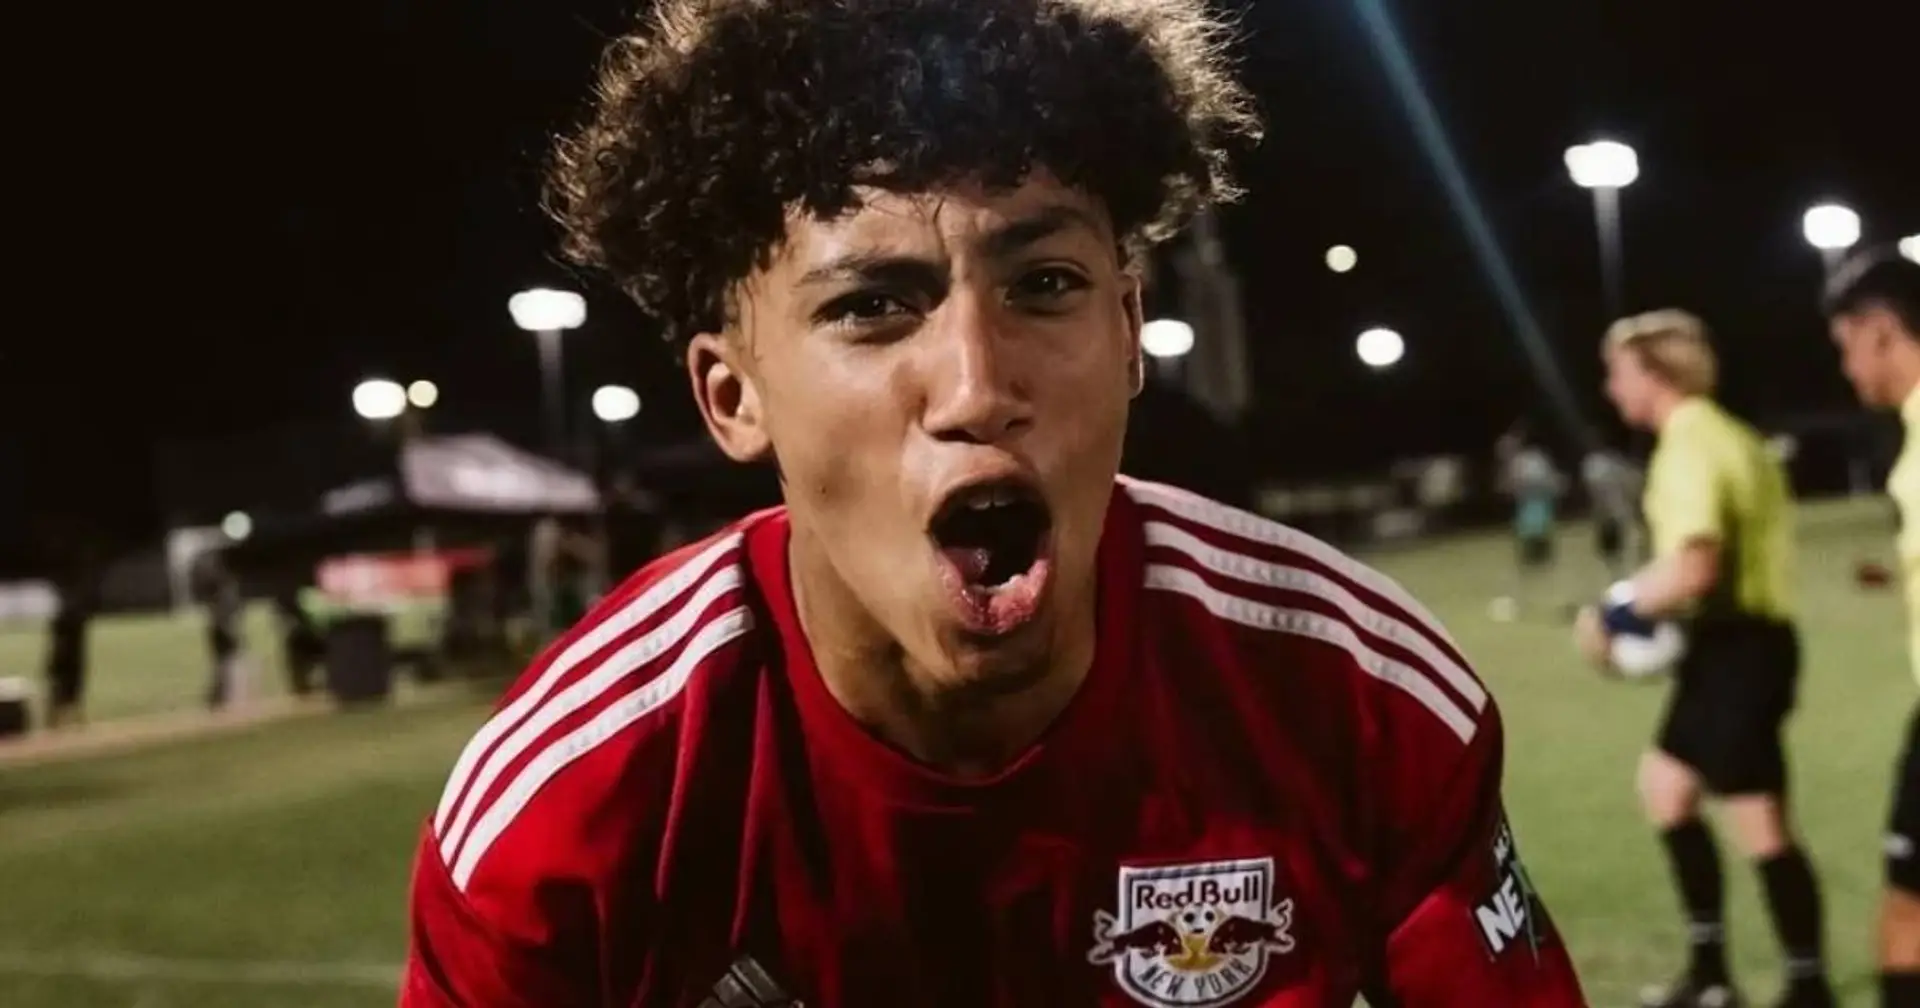 Profi mit 15 Jahren: MLS-Talent Julian Hall rückt ins Visier der Bayern und anderen Top-Klubs - Bericht